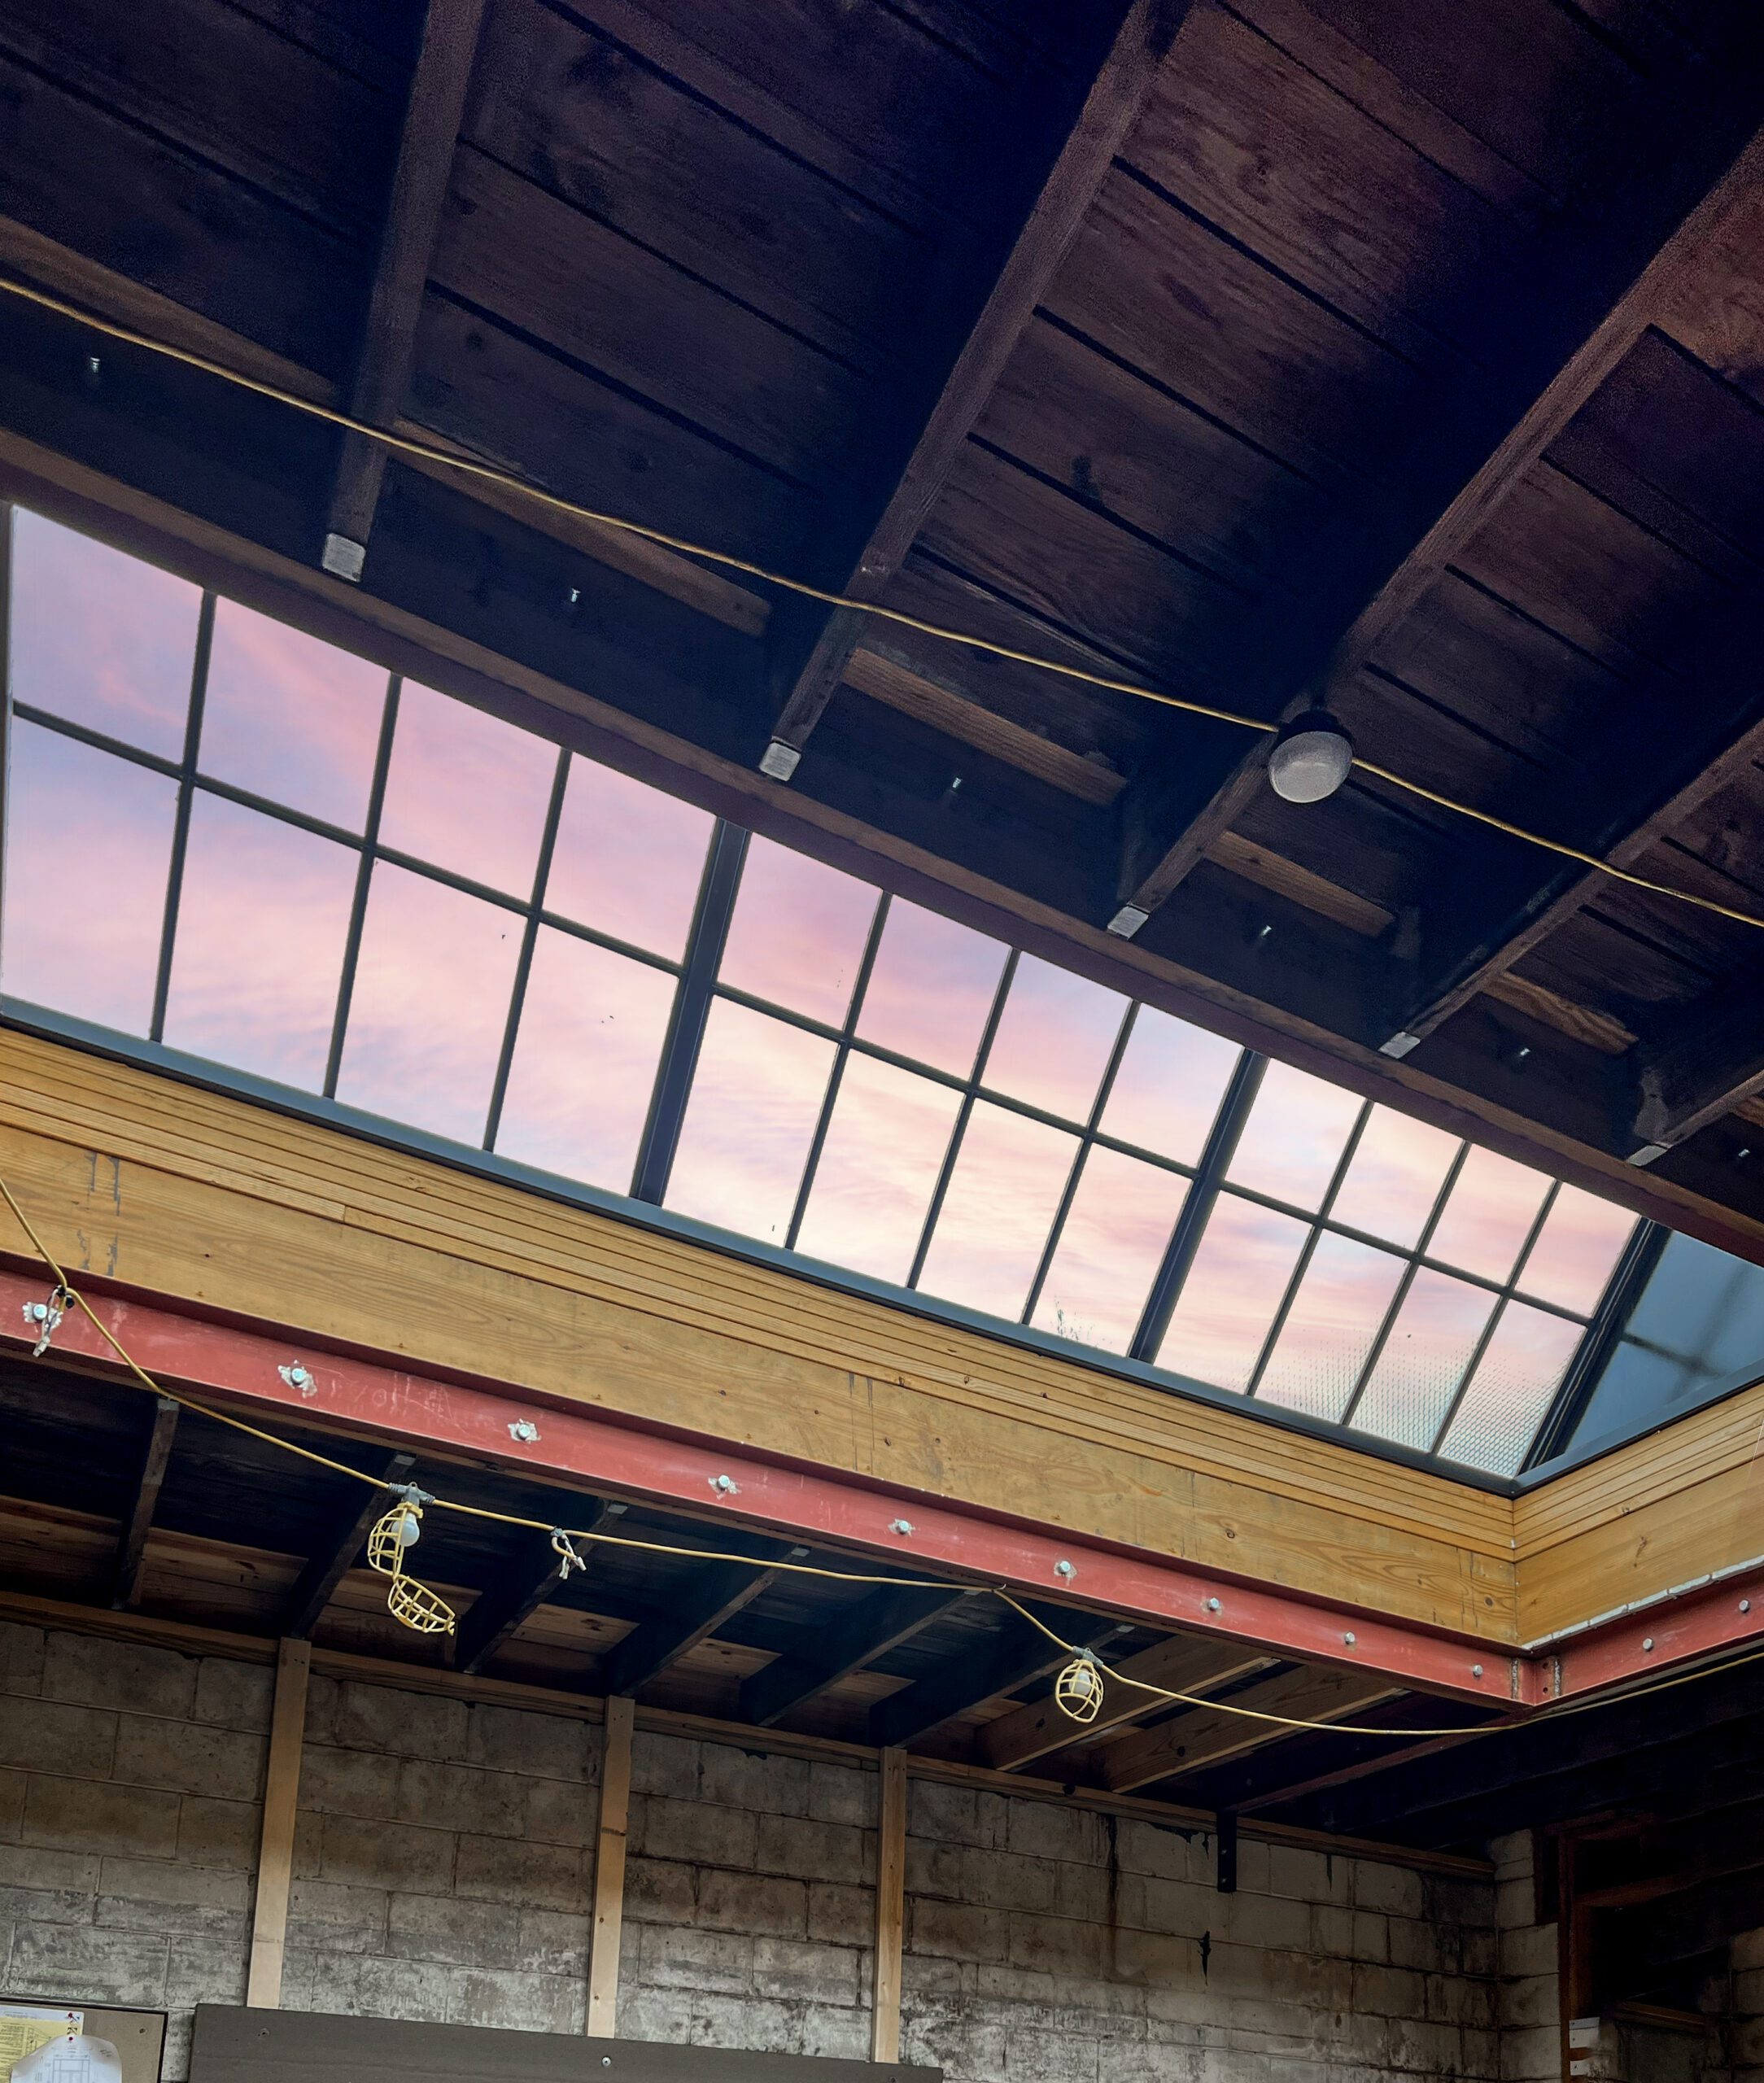 Skylight window in ceiling in office building